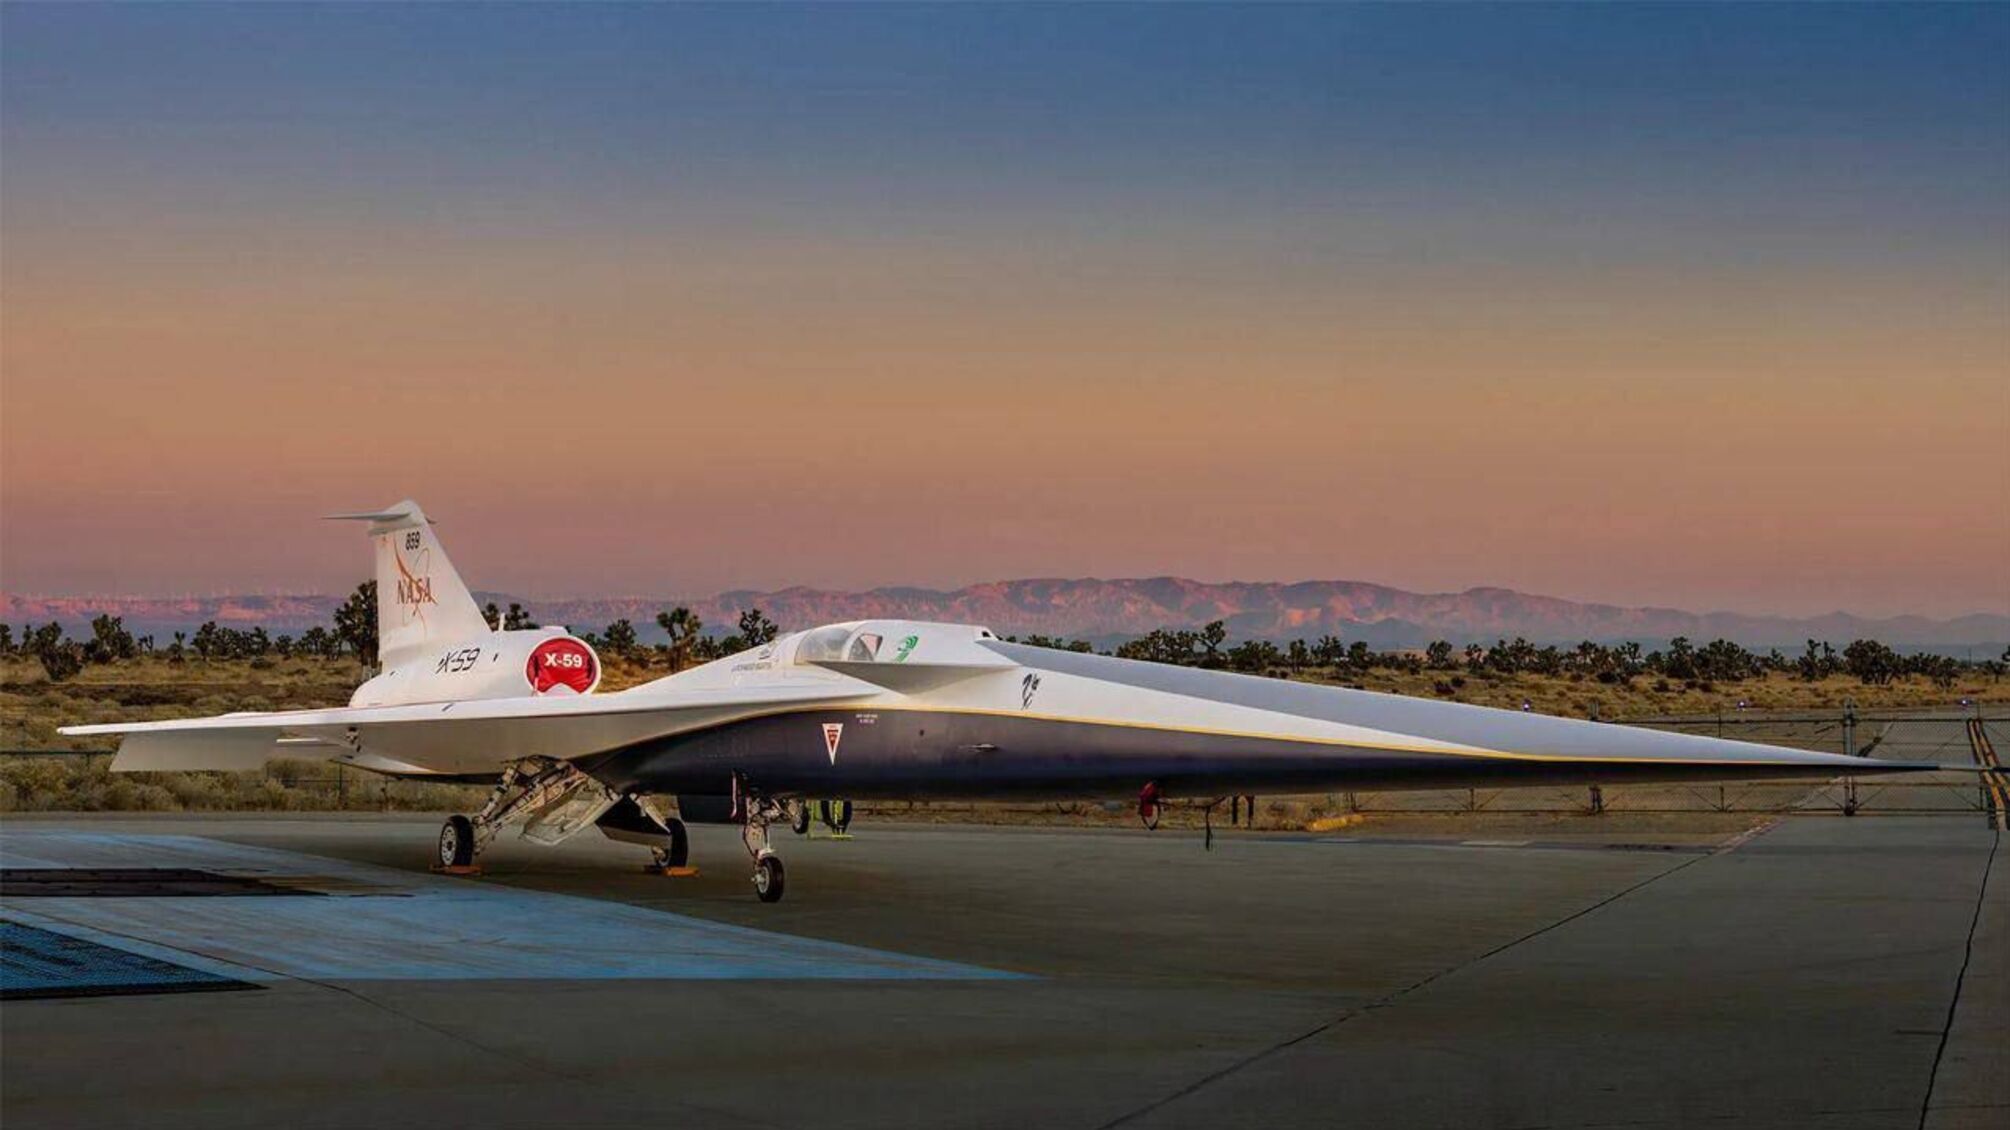 Історична презентація: у NASA розробили X-59 Quesst – літак майбутнього